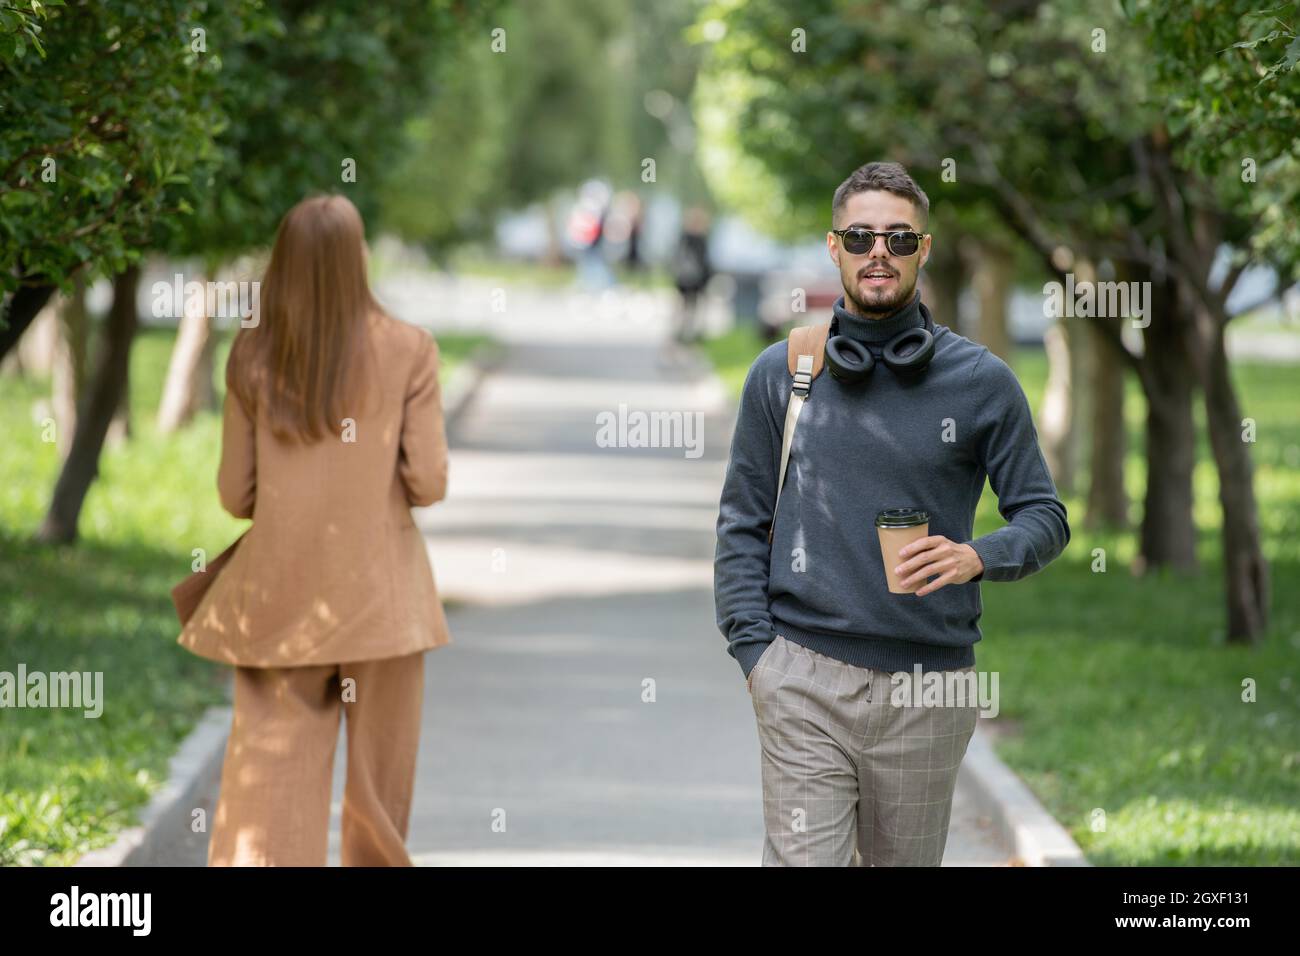 Gutaussehender Kerl mit Getränk, der im Park die Straße hinunter fährt, mit einer jungen Frau im Anzug dahinter Stockfoto